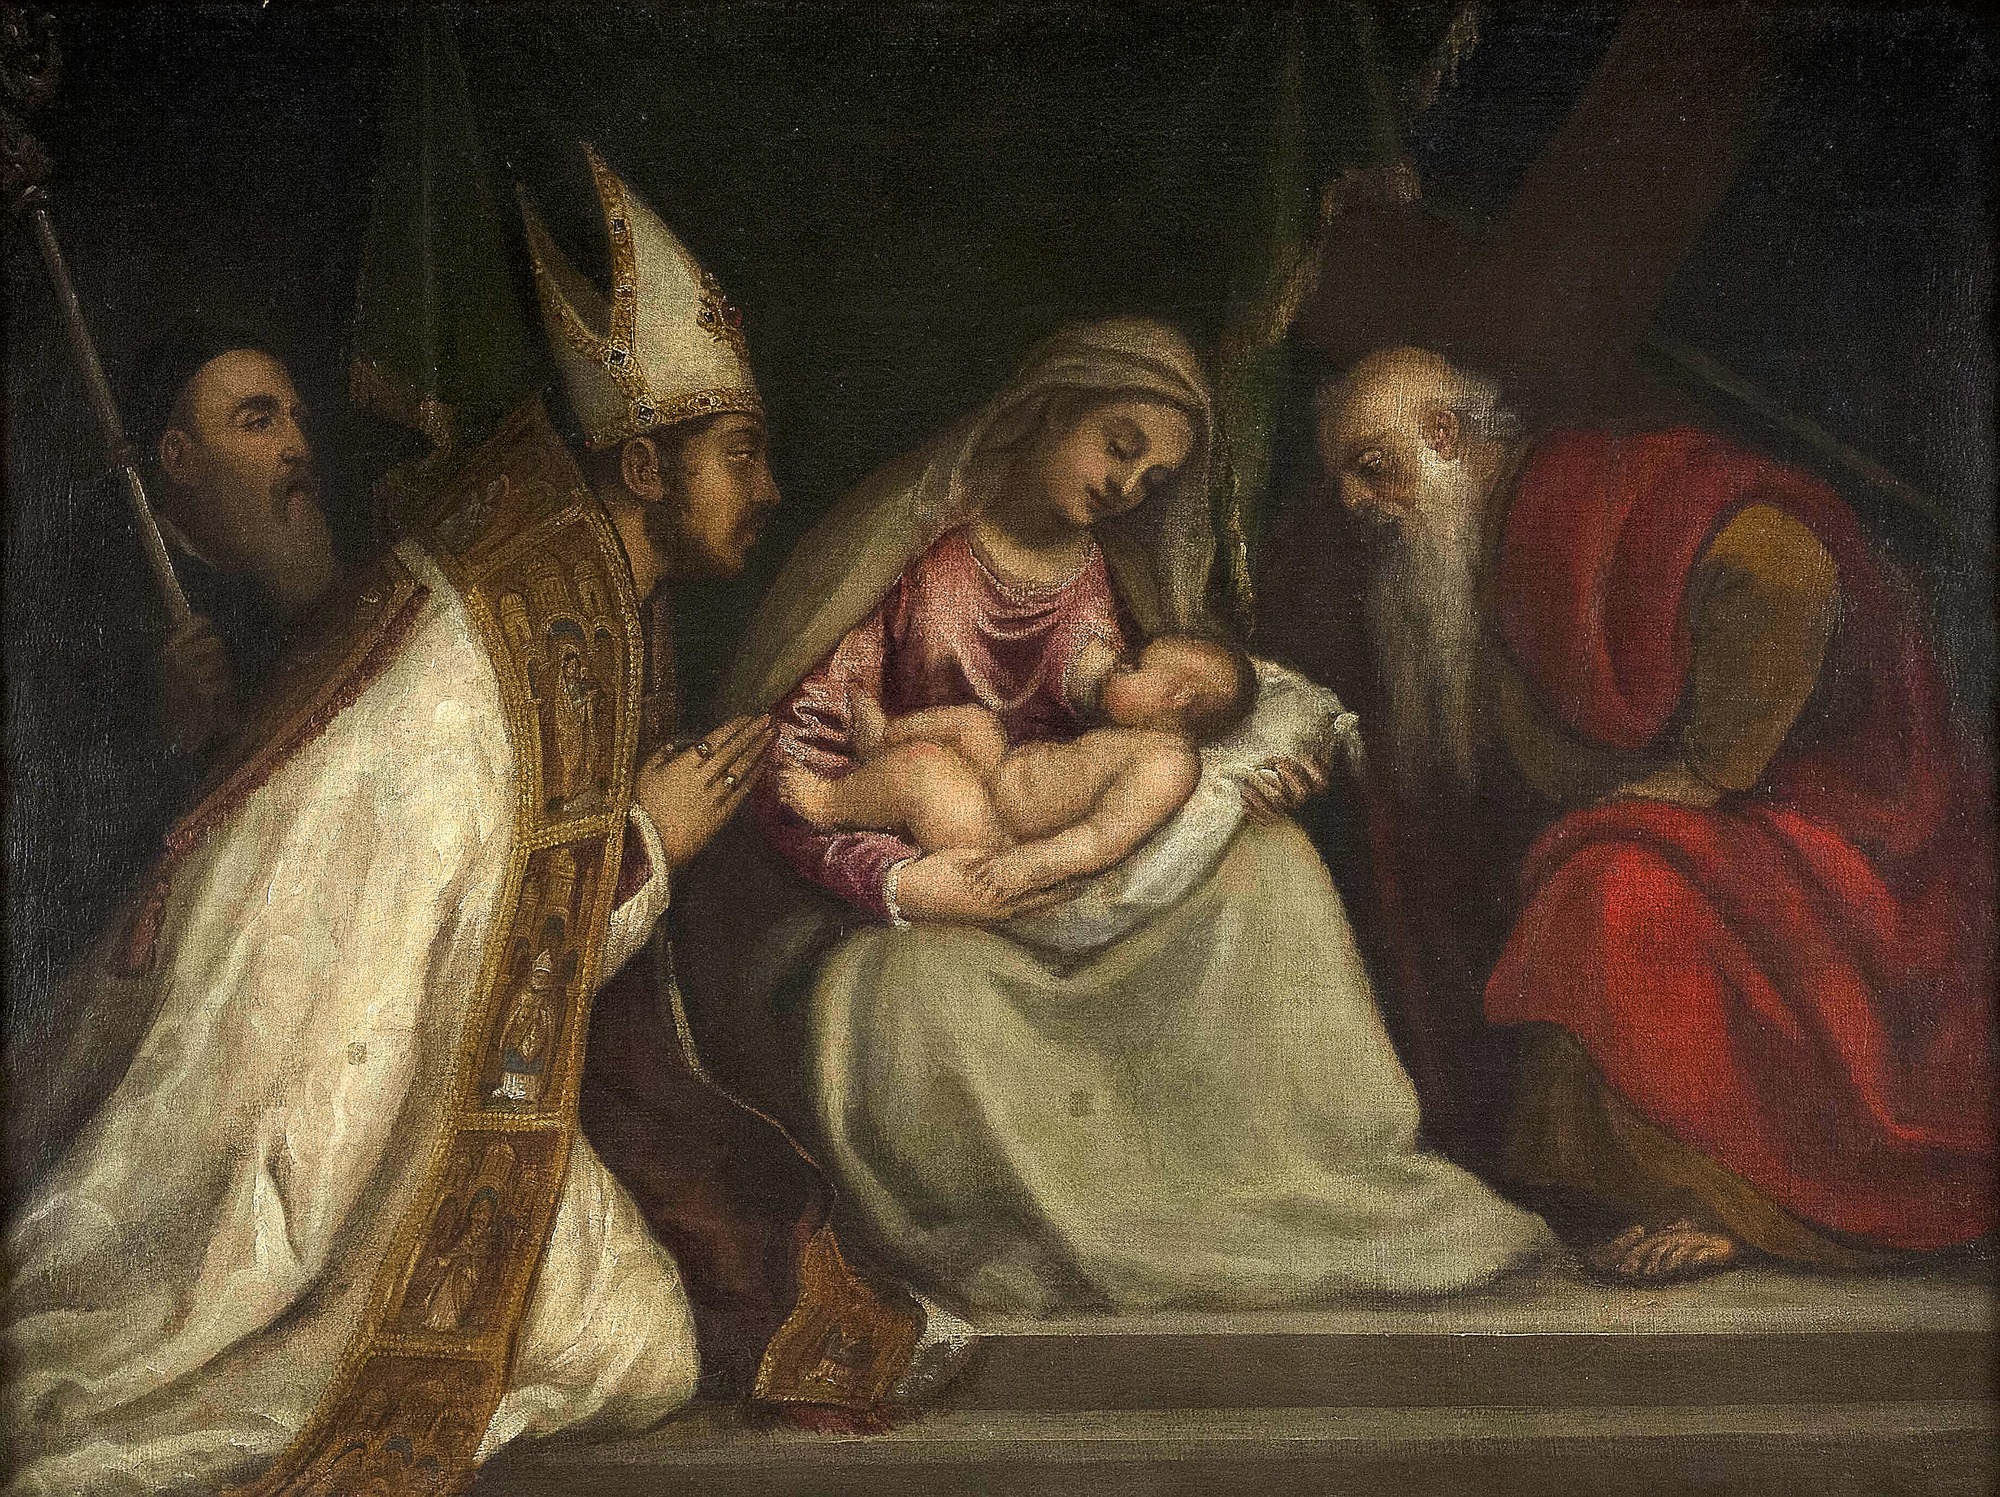 Il Tiziano di Tiziano. Al via il restauro della pala con l’autoritratto del genio